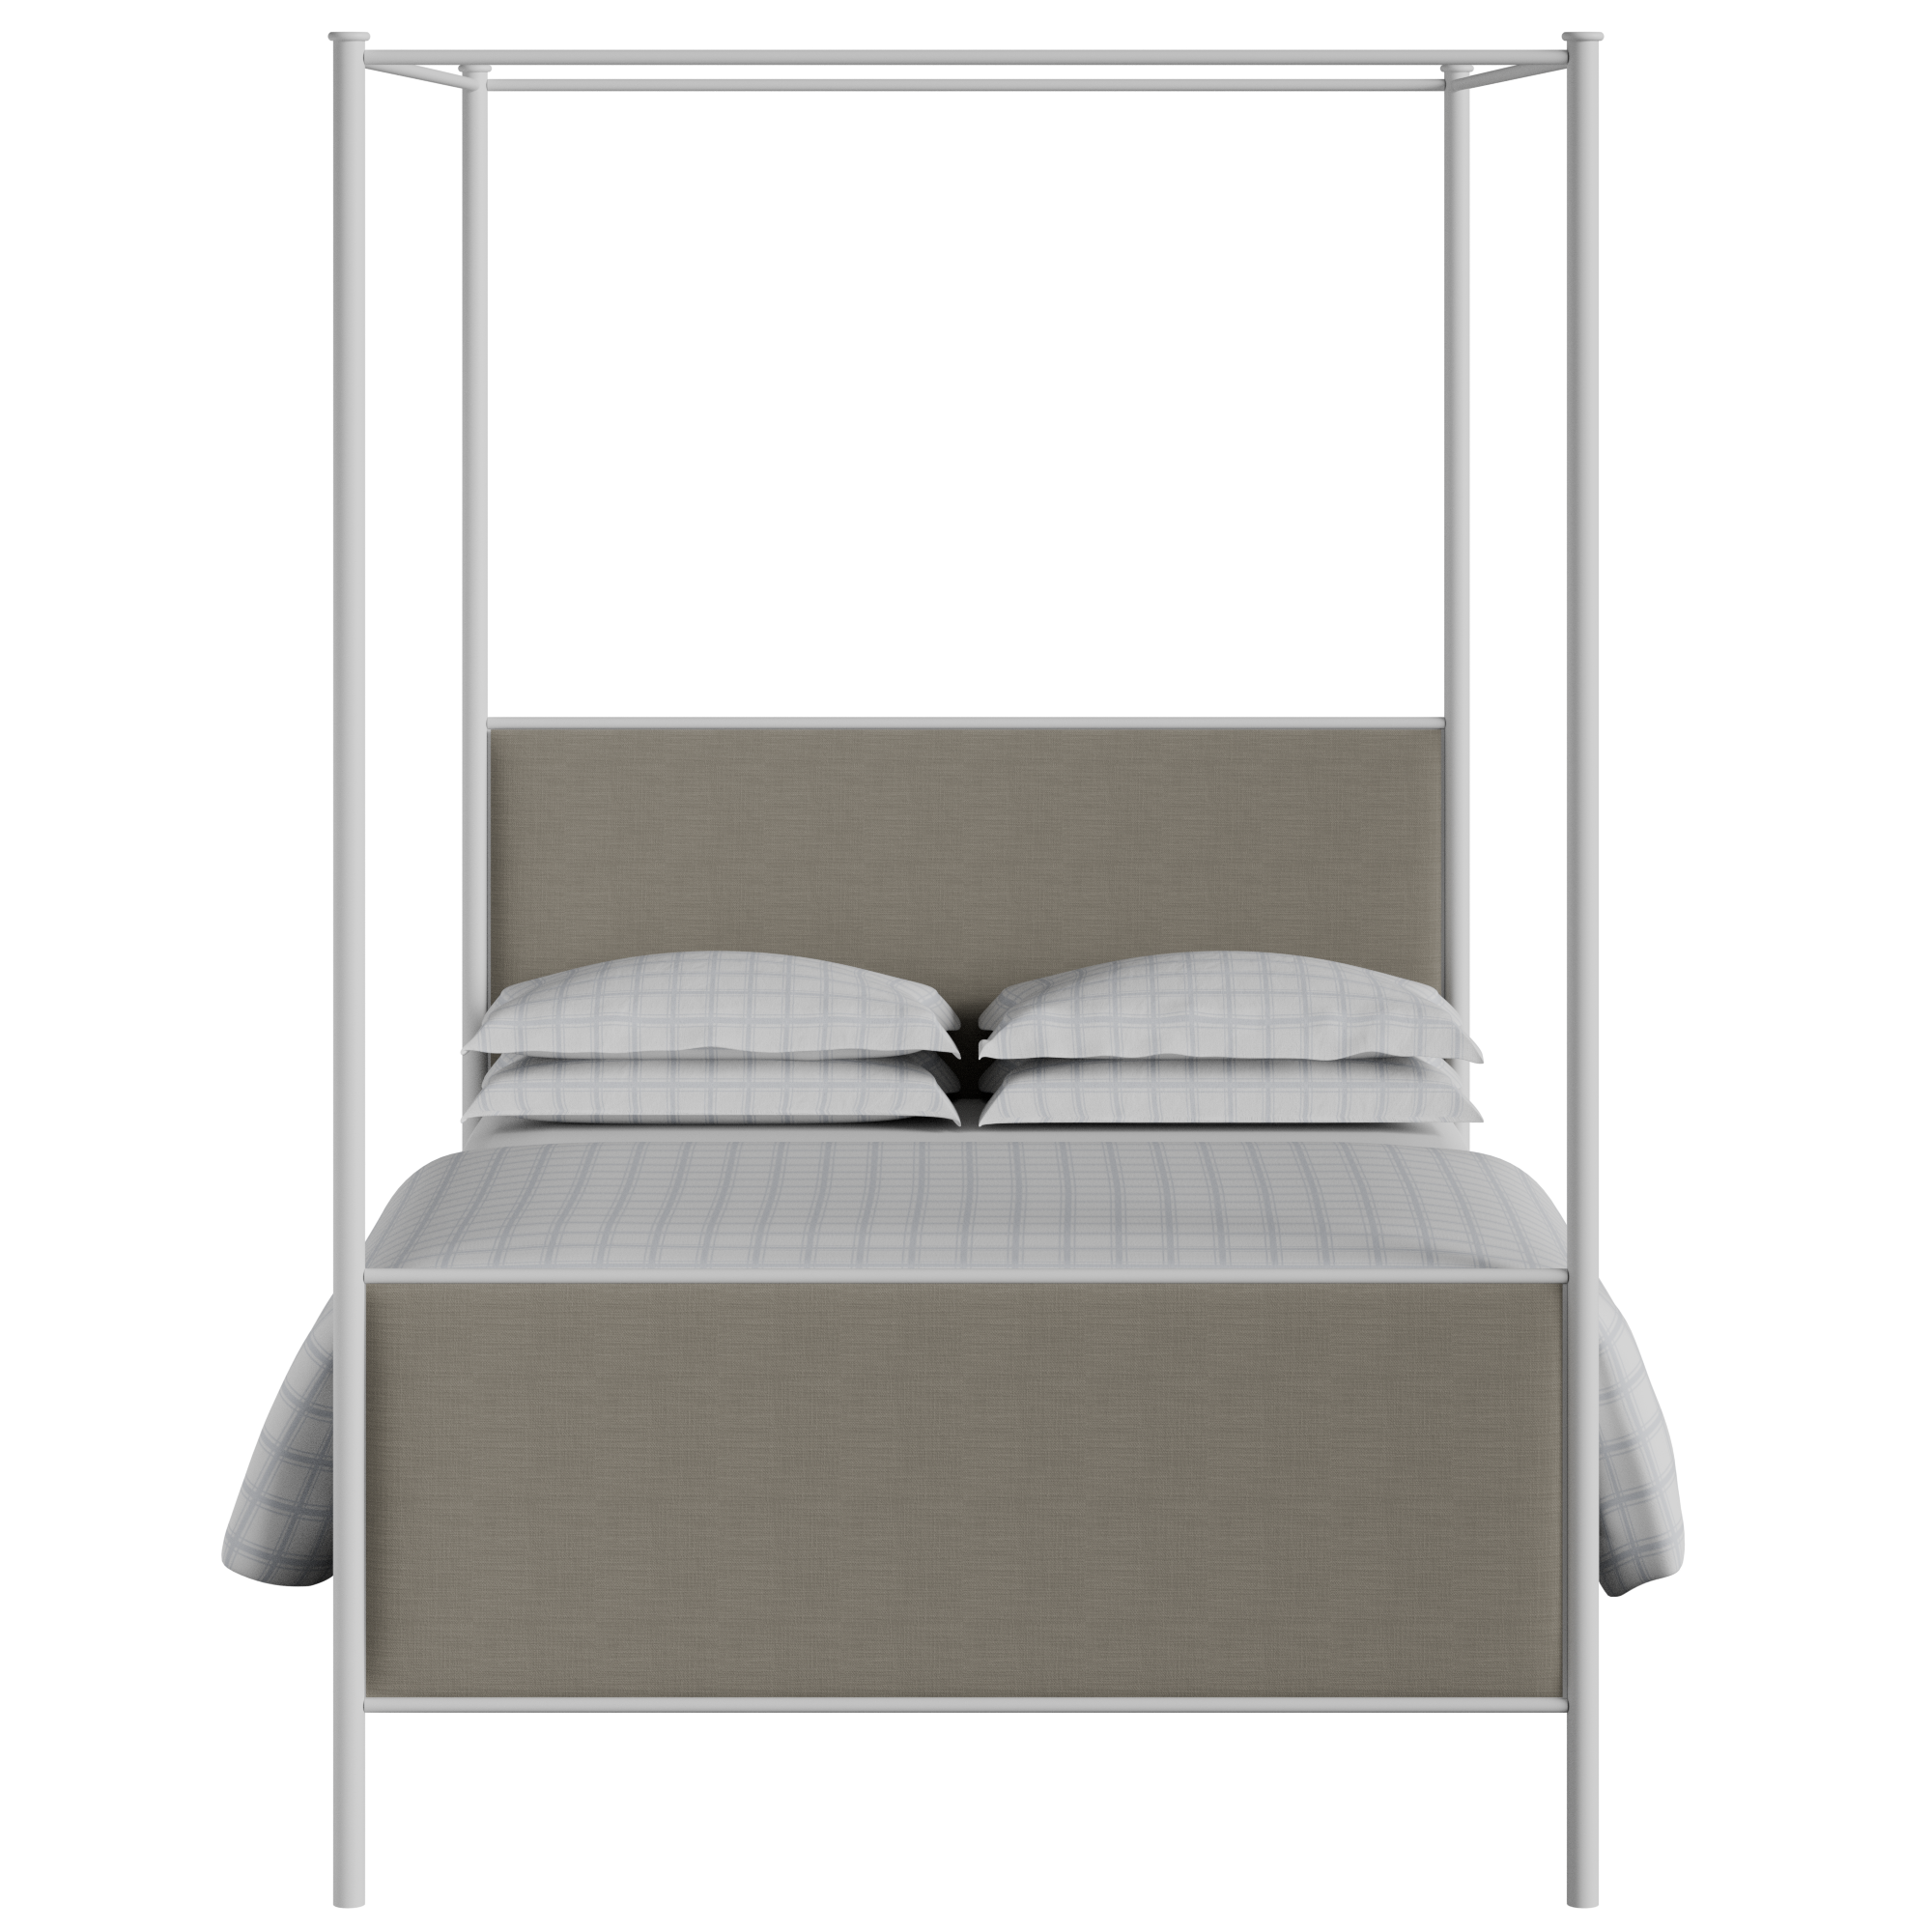 Reims cama de metal en blanco con tela gris